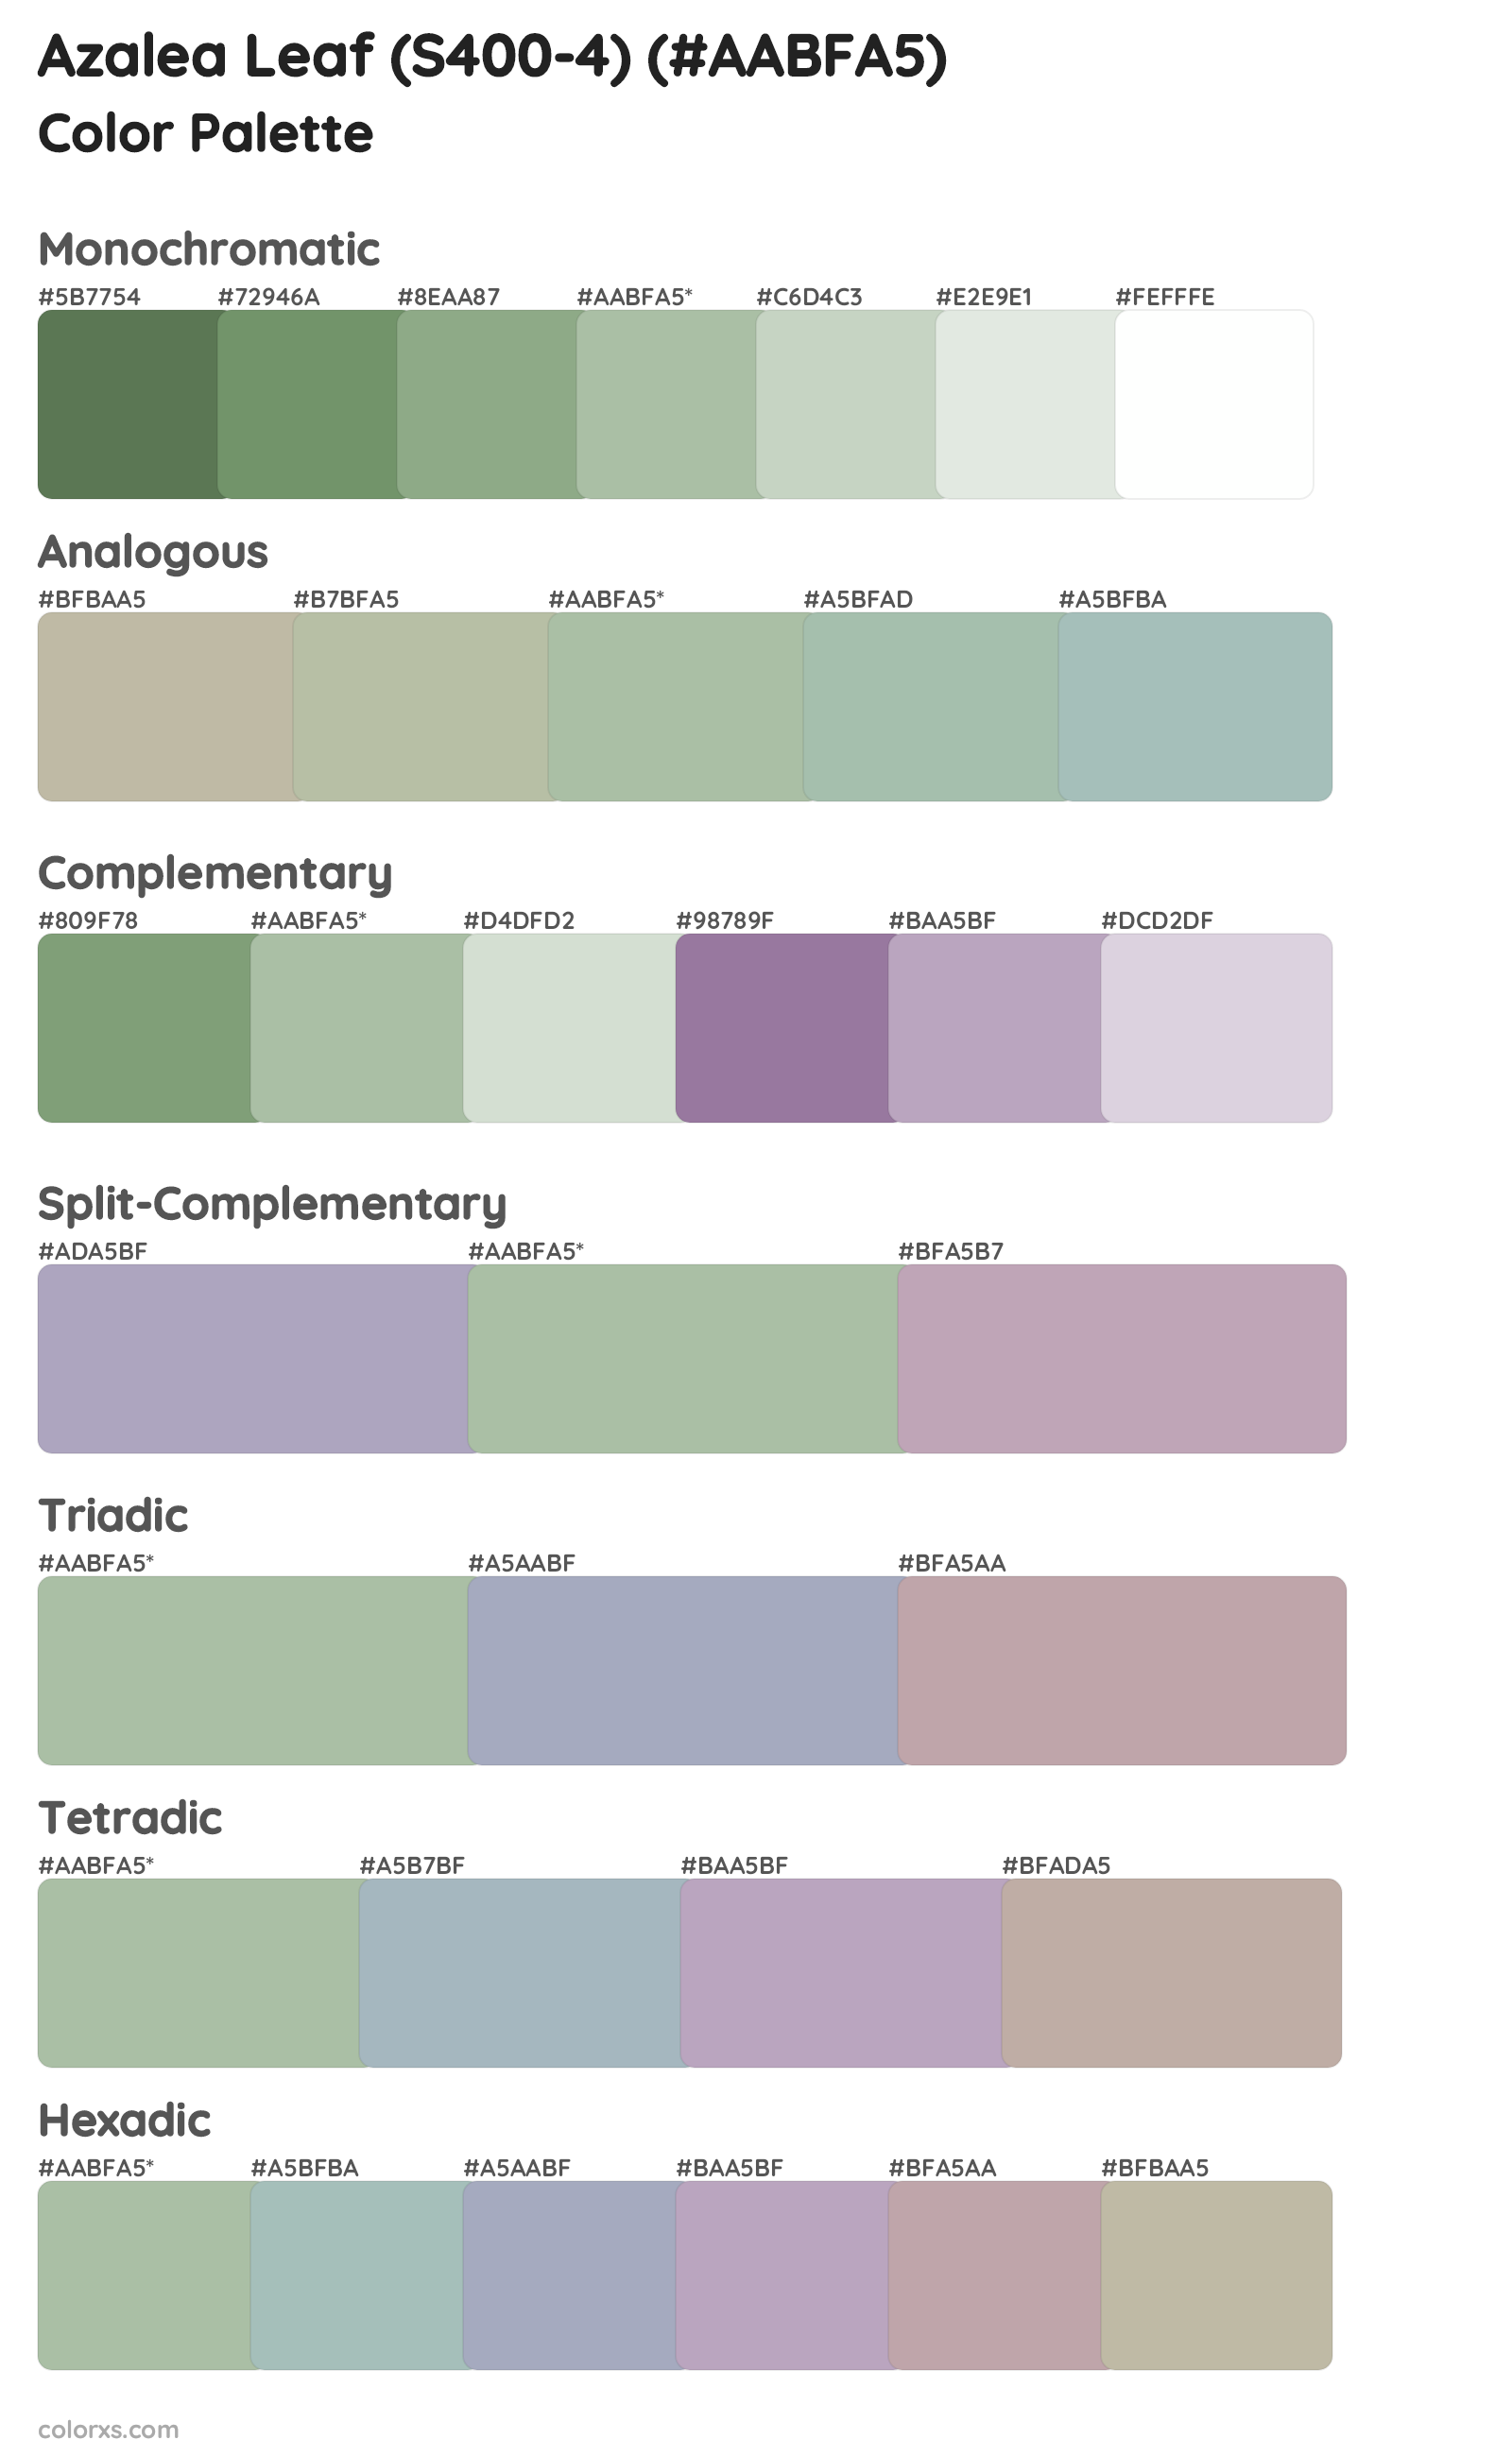 Azalea Leaf (S400-4) Color Scheme Palettes